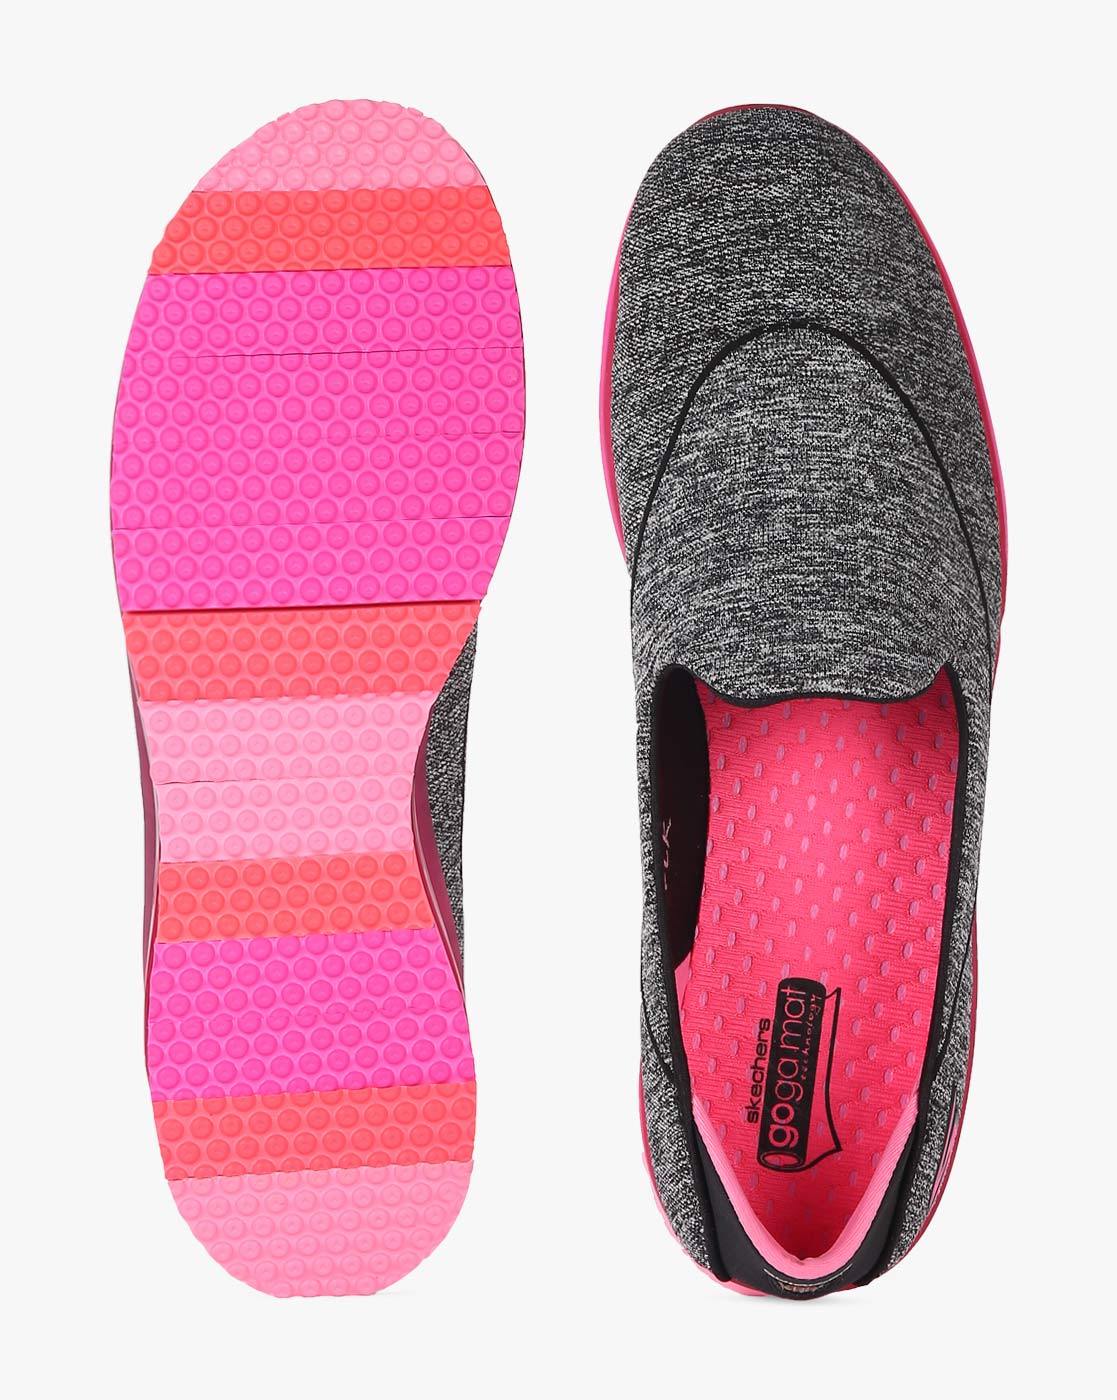 skechers go flex pink lifestyle shoes